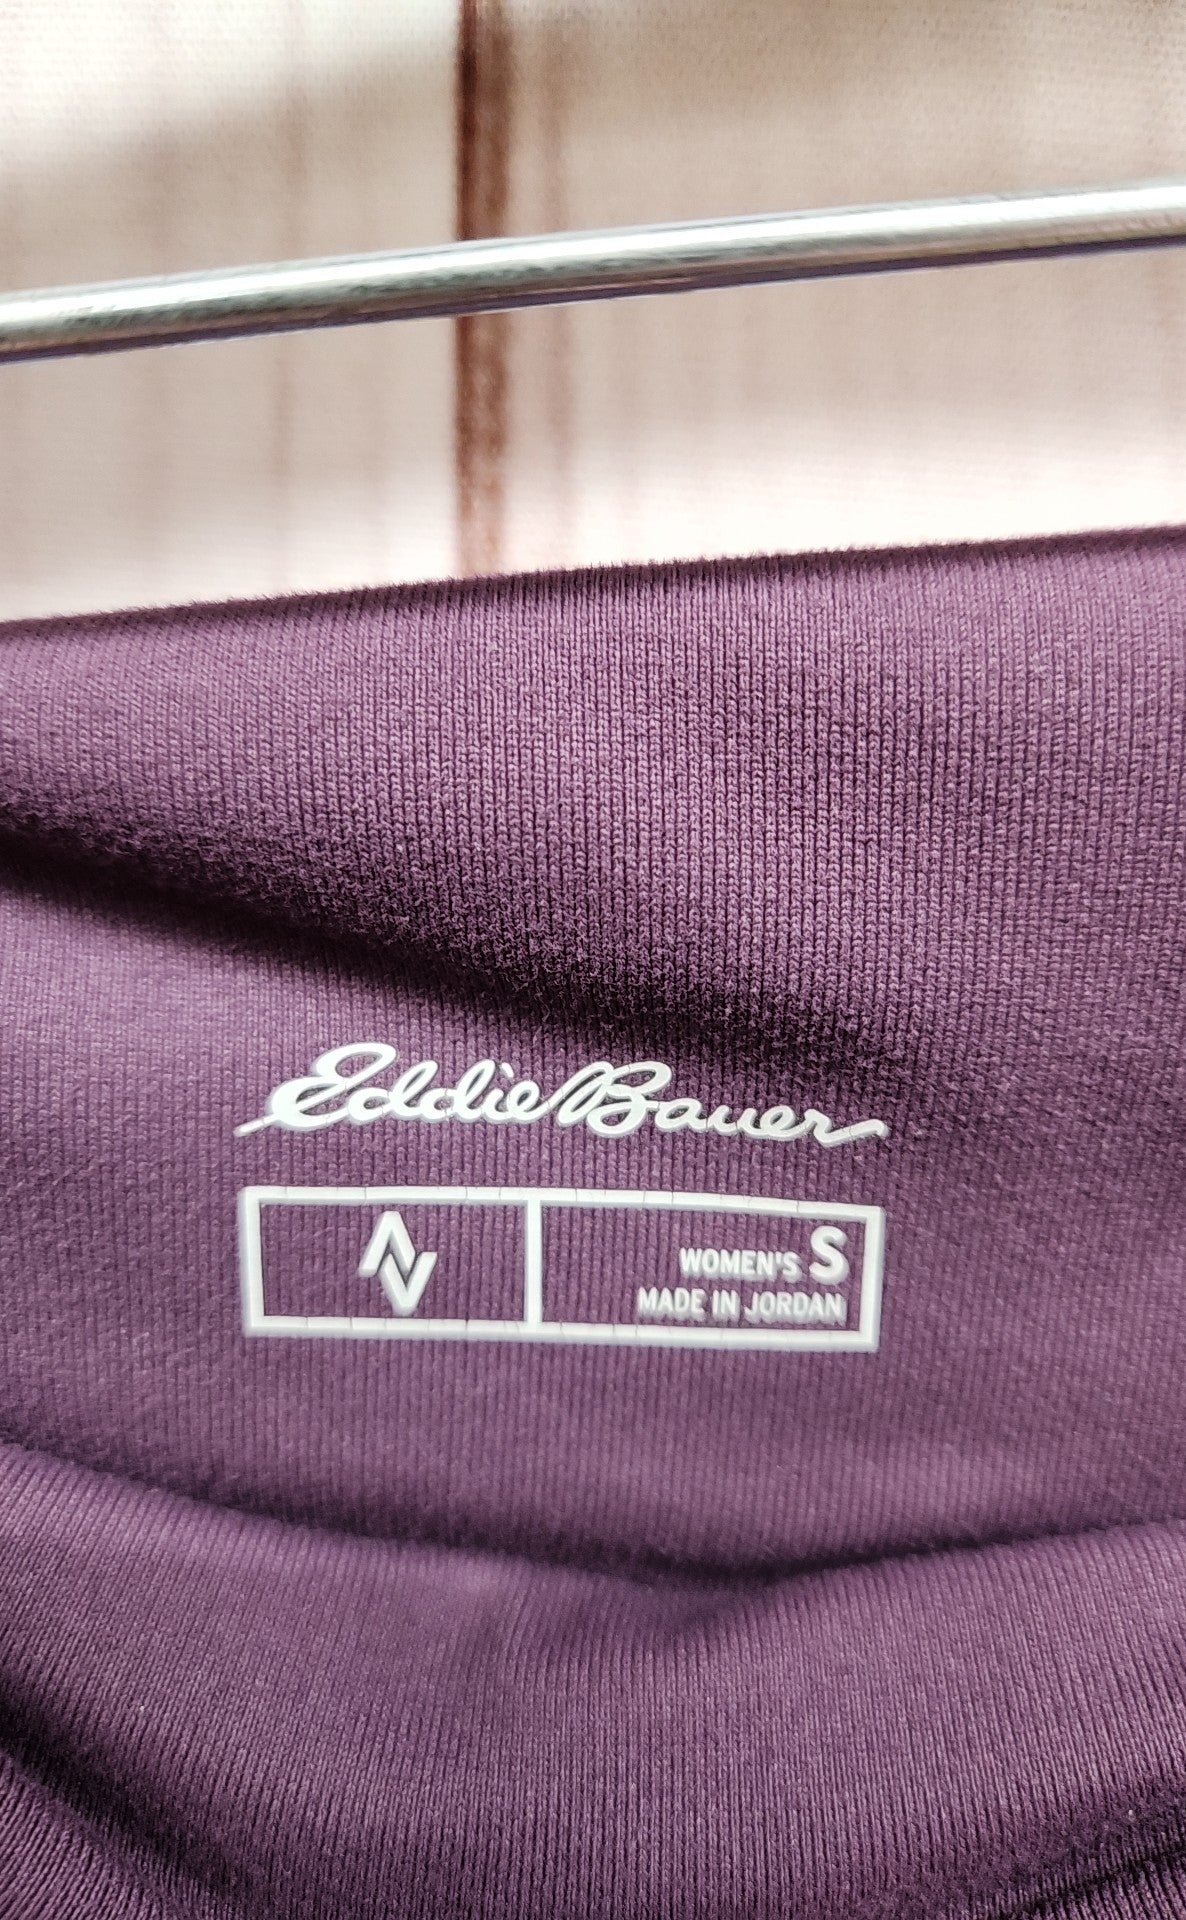 Eddie Bauer Women's Size S Purple Skirt